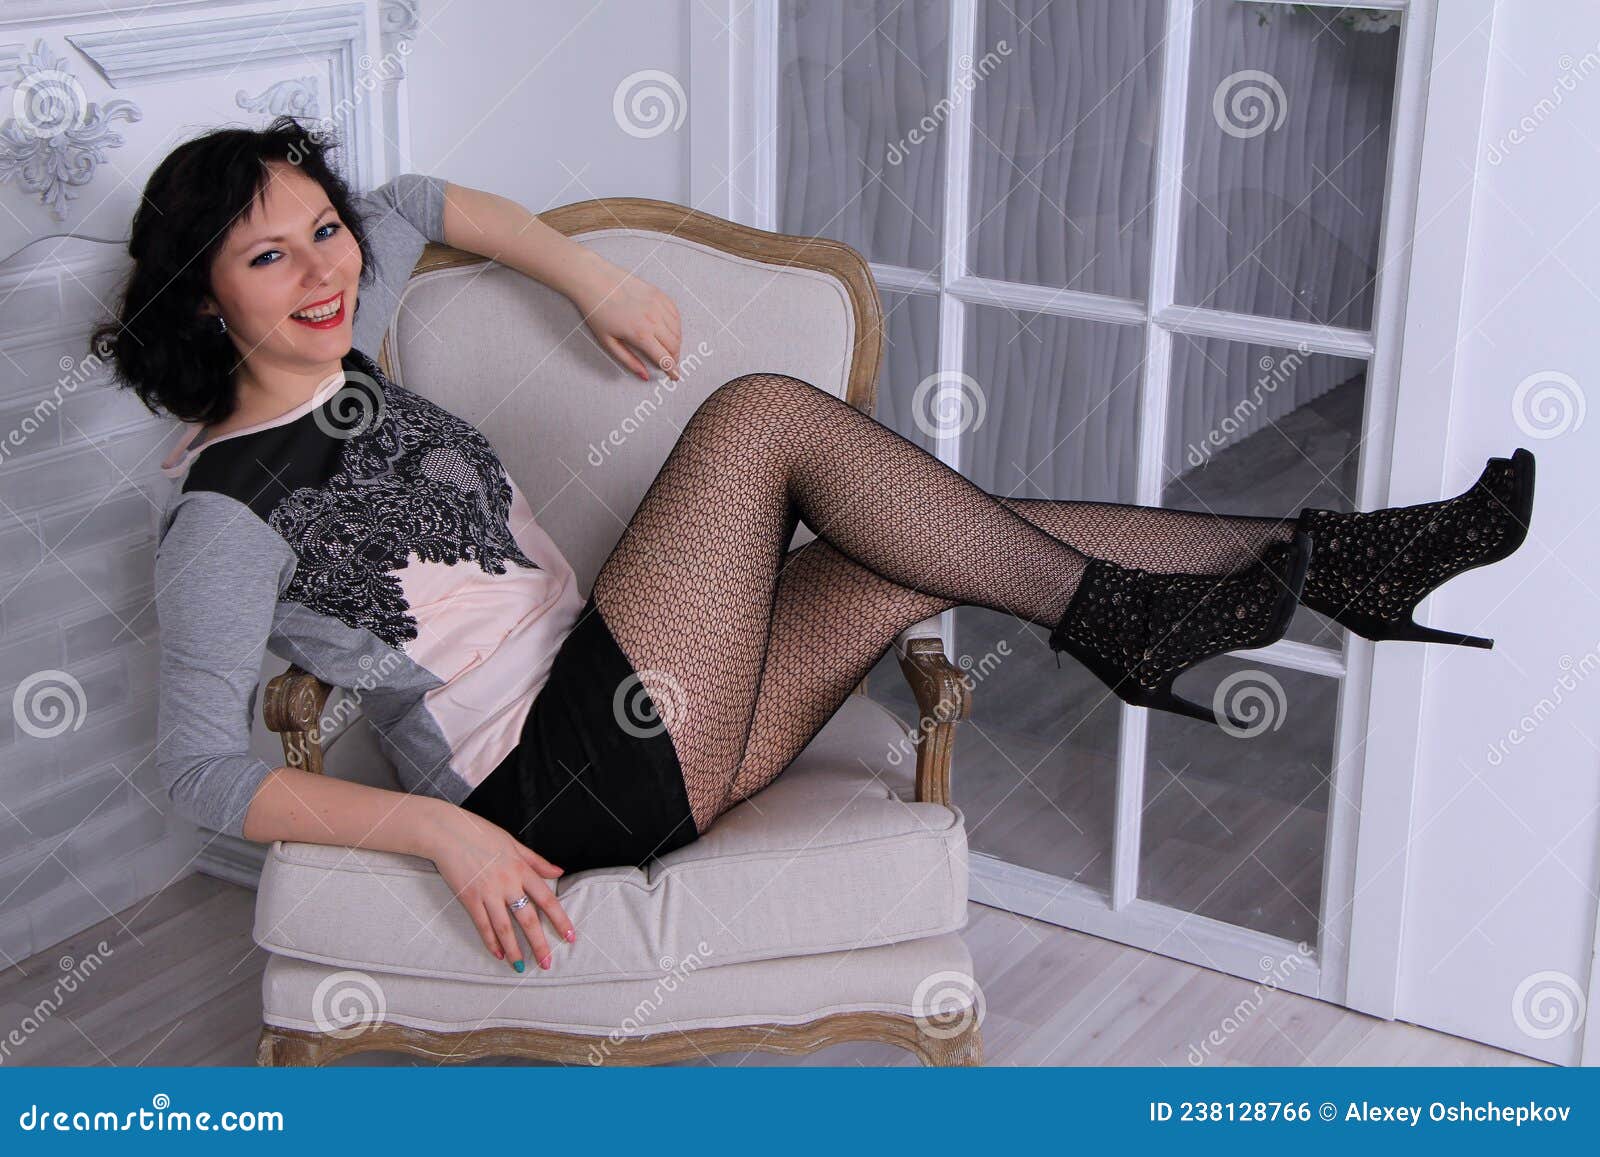 Beautiful Legged Brunette Girl in Black Miniskirt and Black